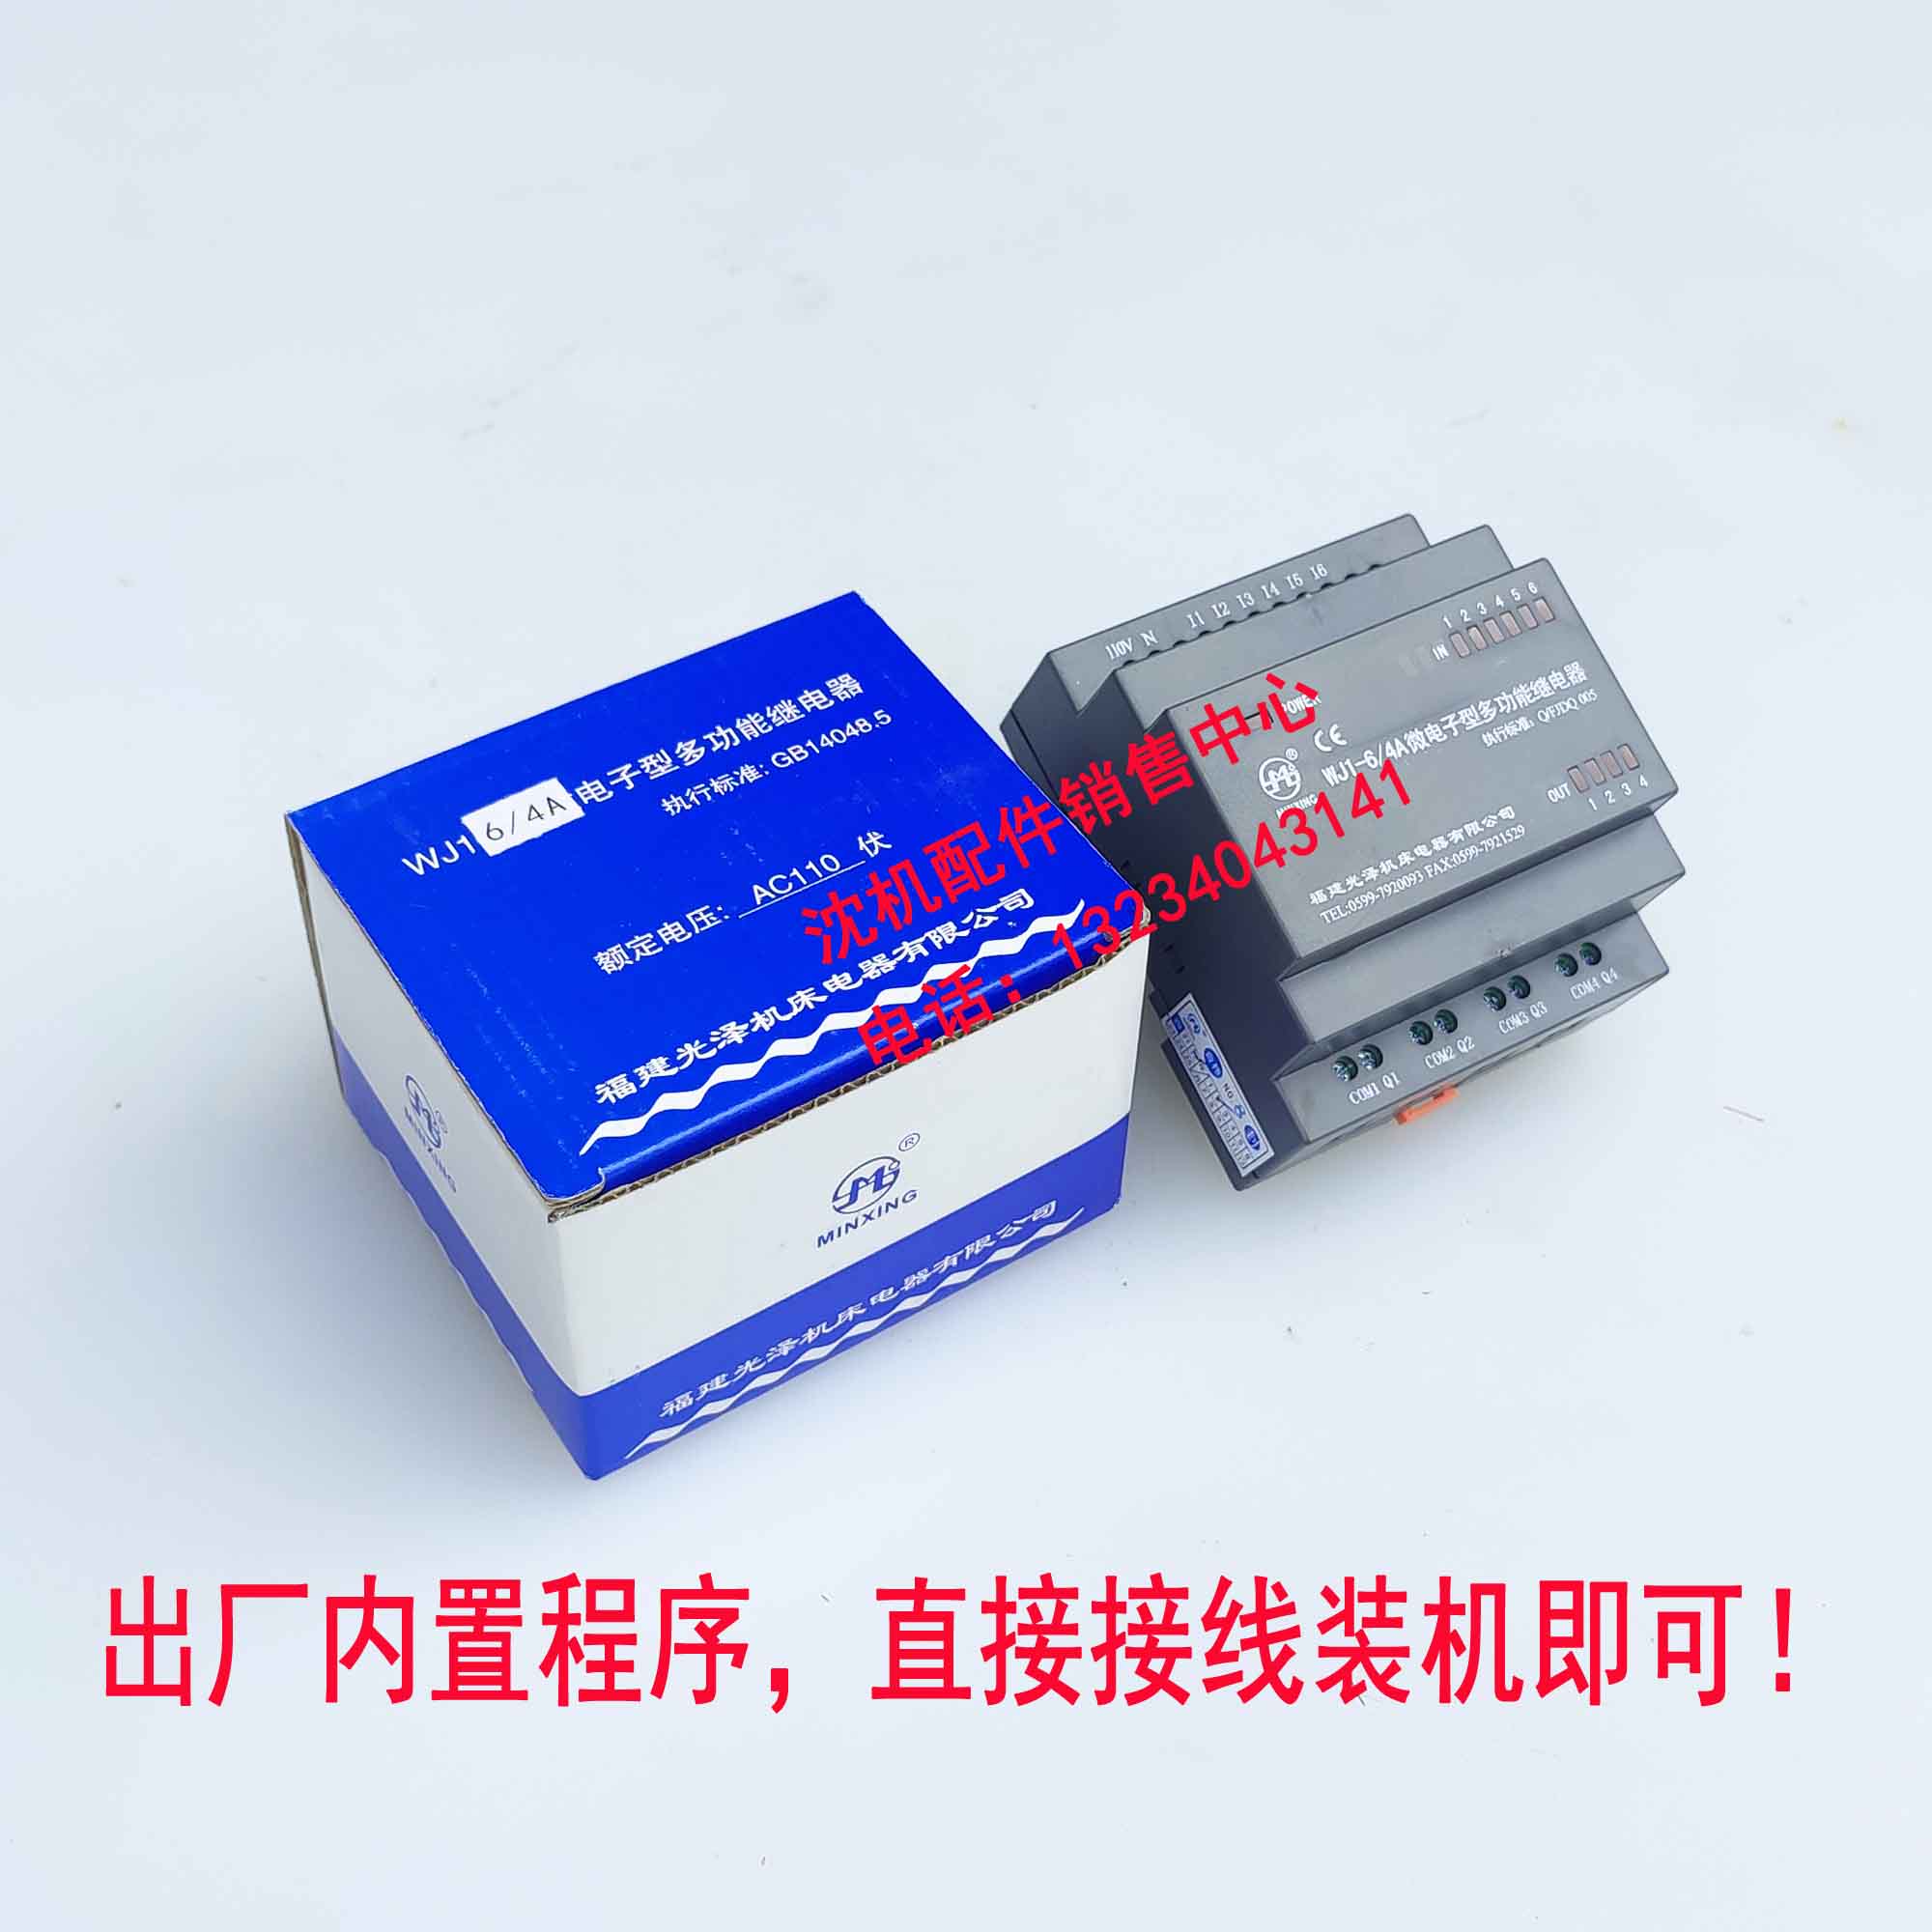 沈阳中捷钻床Z3040 Z3050福建光泽 WJ1-6/4 微电子型多功能继电器 - 图2